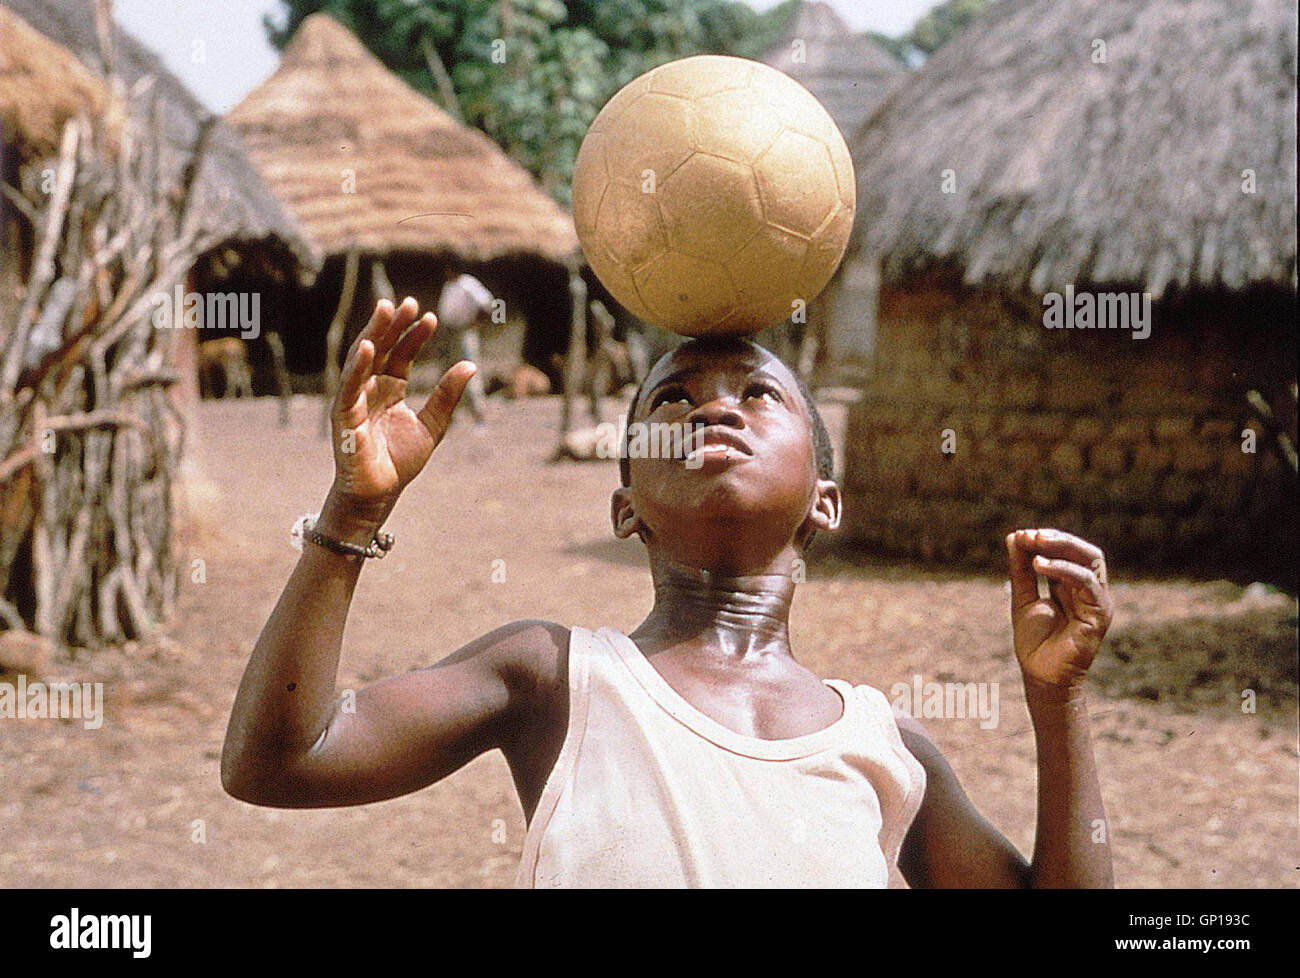 Aboubacar Sidiki Soumah Bando (Aboubacar Sidiki Soumah) geraet in die Faenge geldgieriger Sponsoren. *** Local Caption *** 1993, Ballon D'or, Le, Bando Und Der Goldenen Fussball Stock Photo